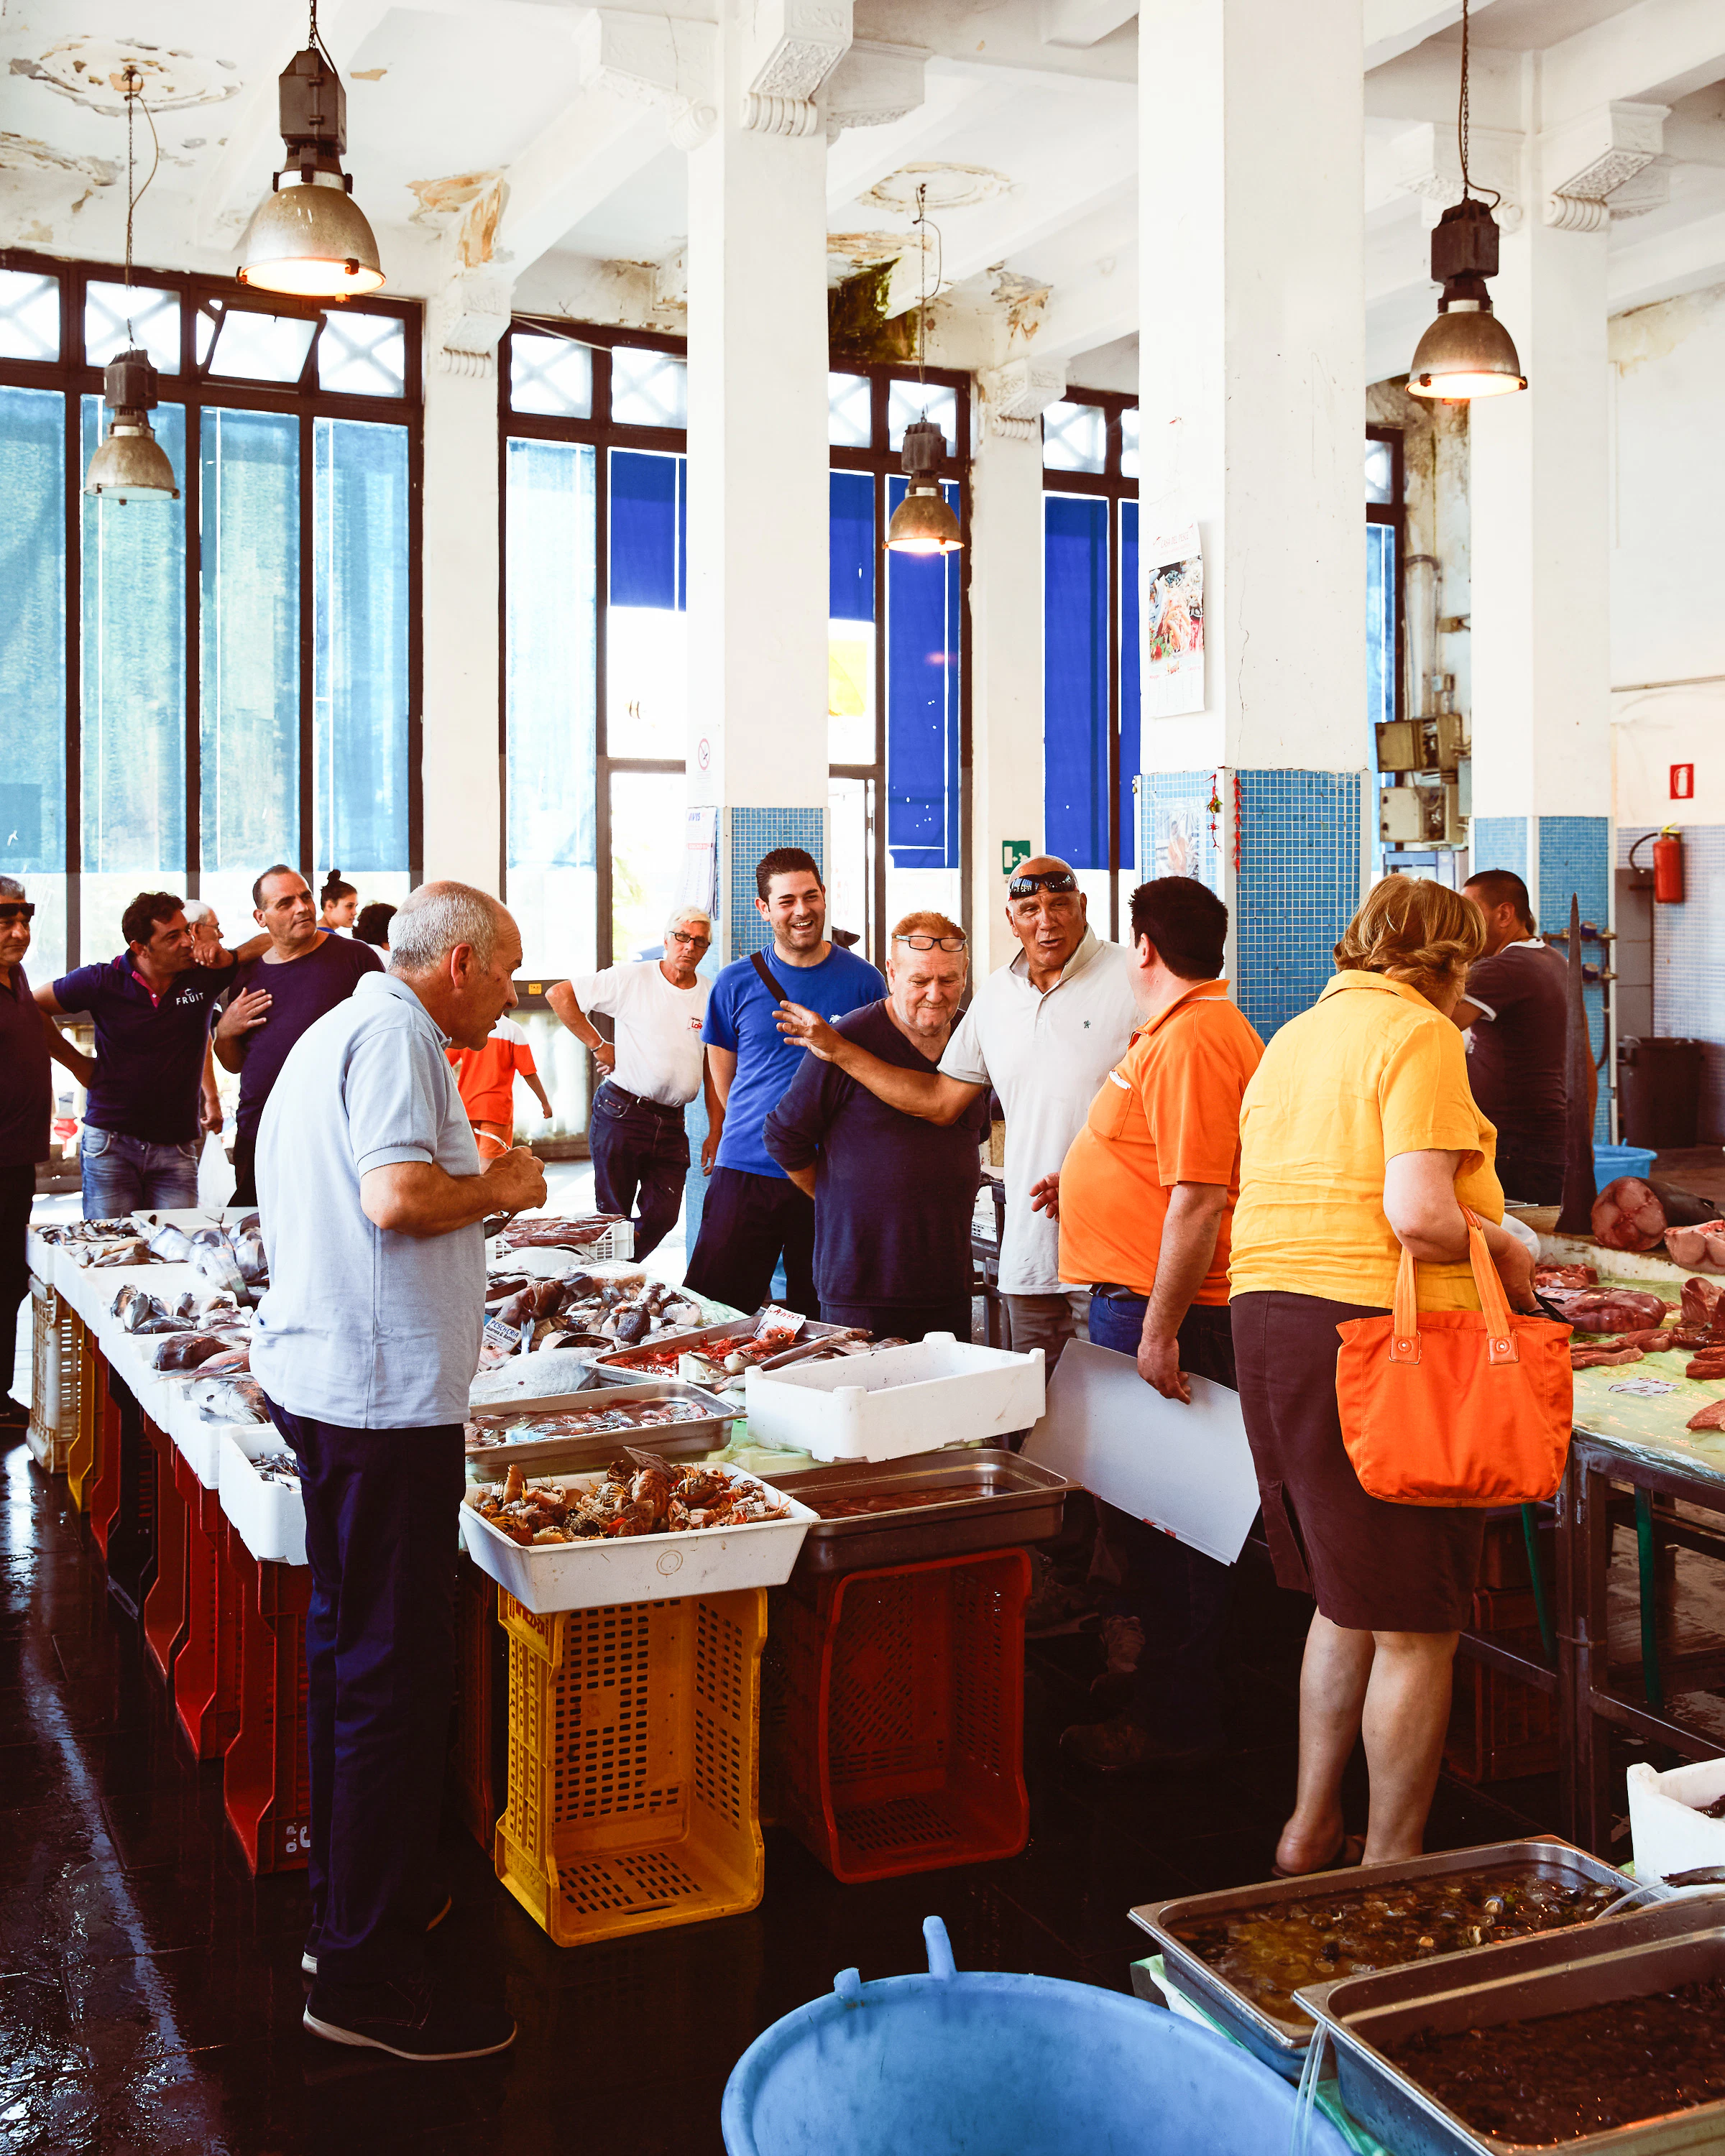 A busy market in Sicily | Crosta & Mollica